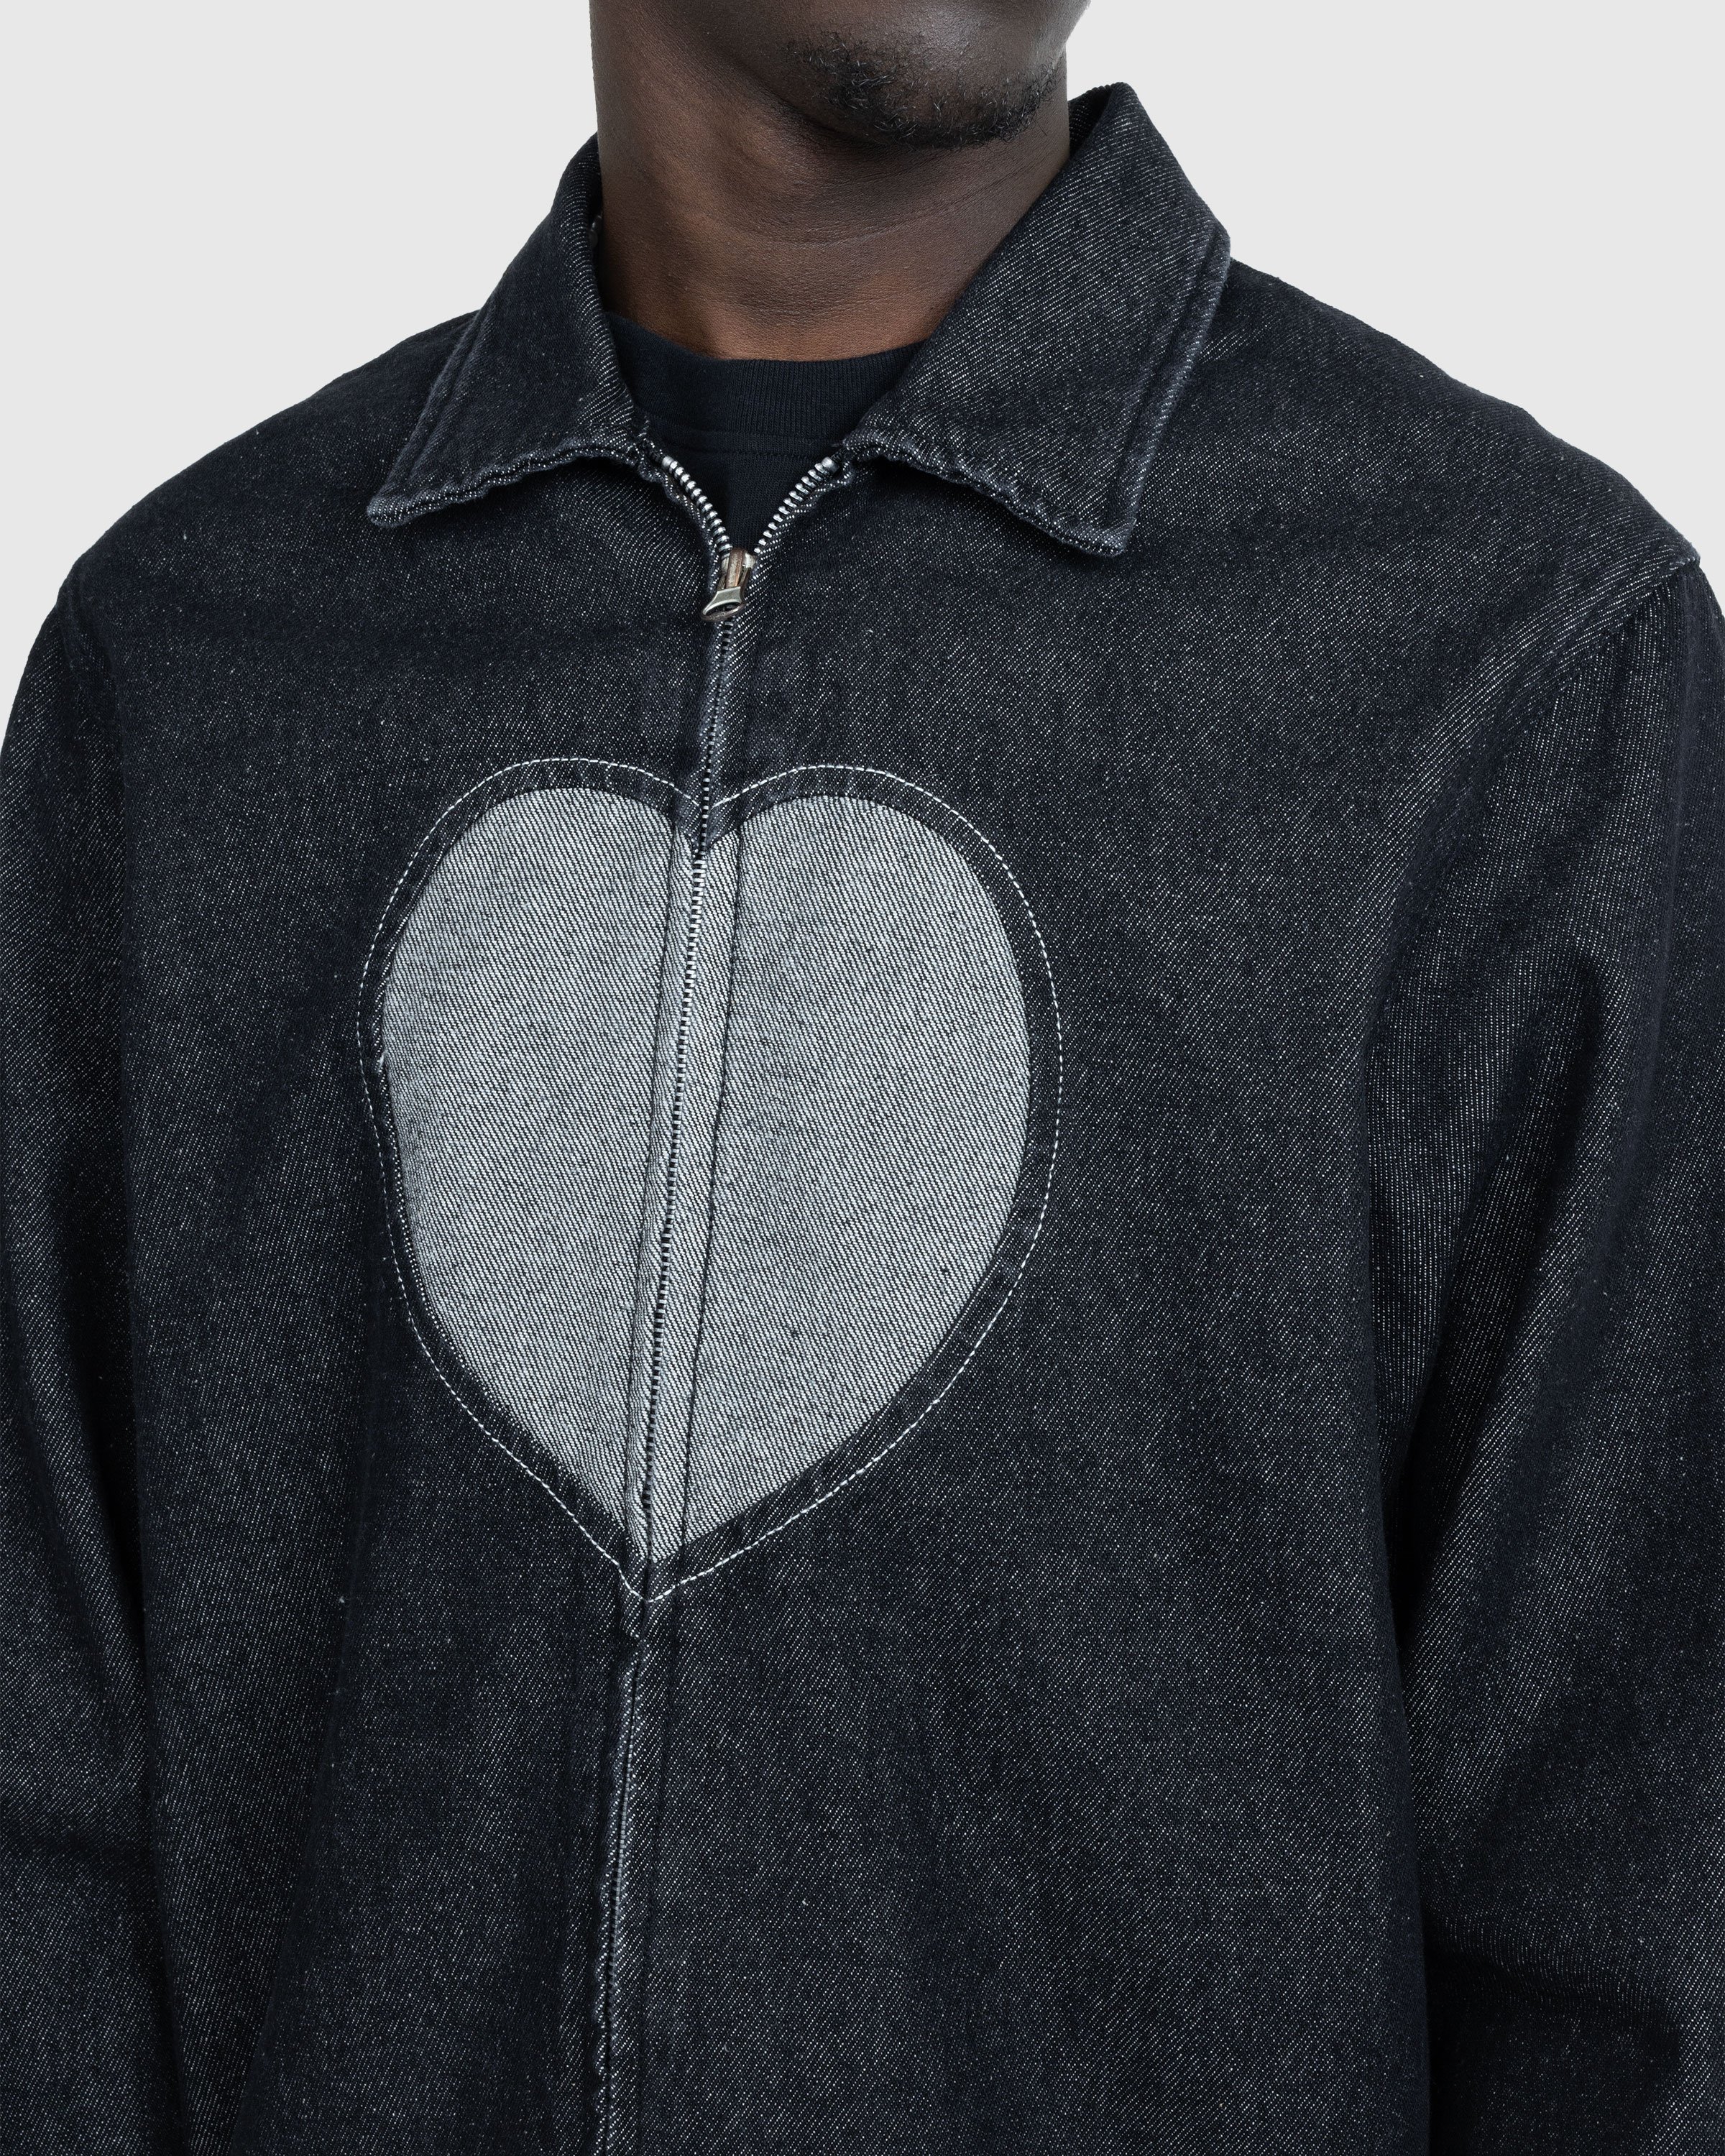 Carne Bollente - Heart Slice Jacket Washed Black - Clothing - Black - Image 4